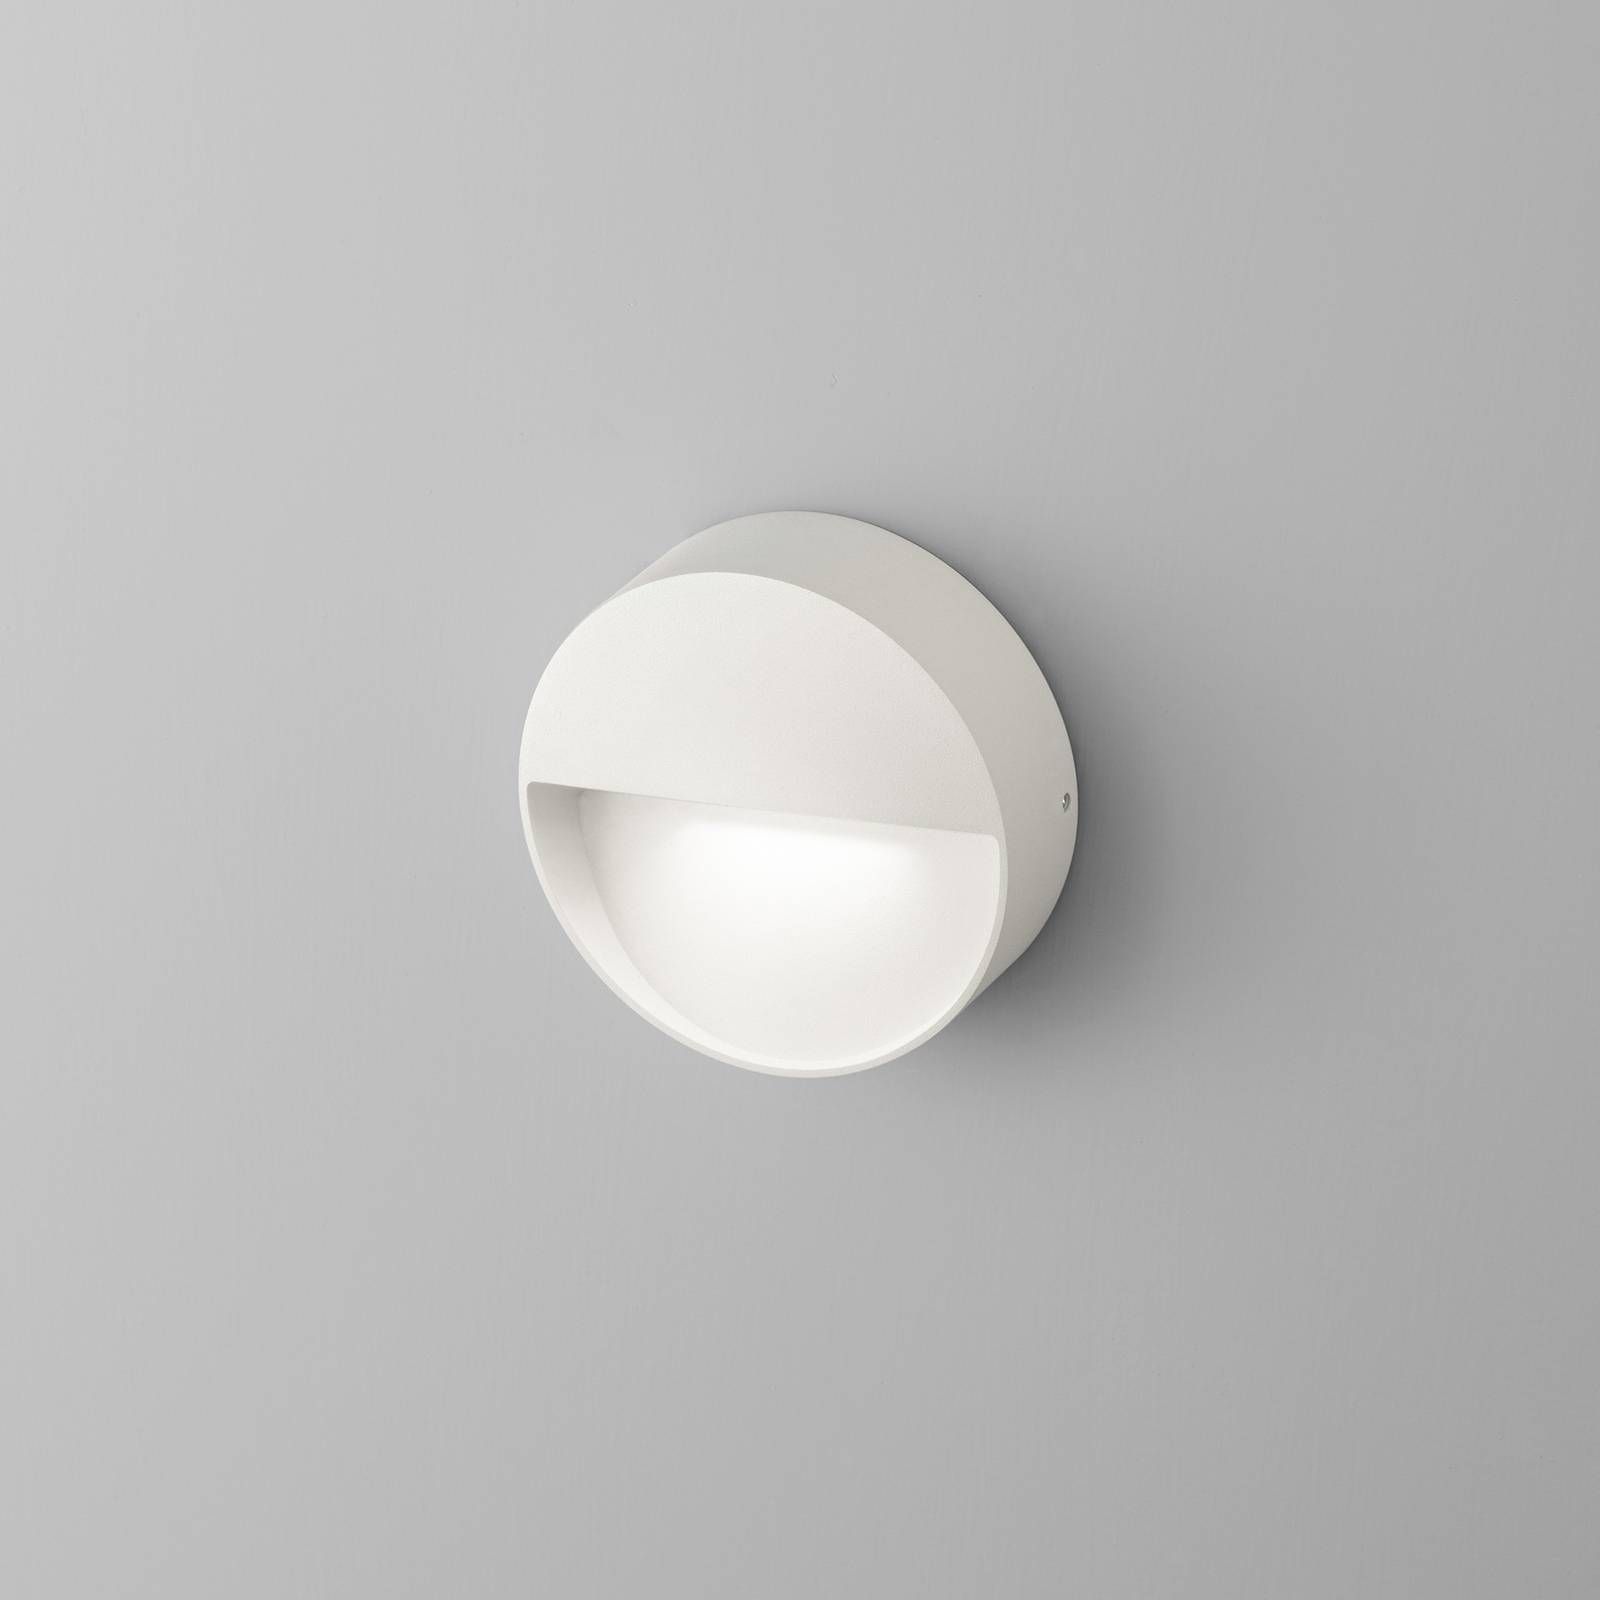 Egger Licht Vigo nástenné LED svietidlo s IP54, biela, Chodba, hliník, 4W